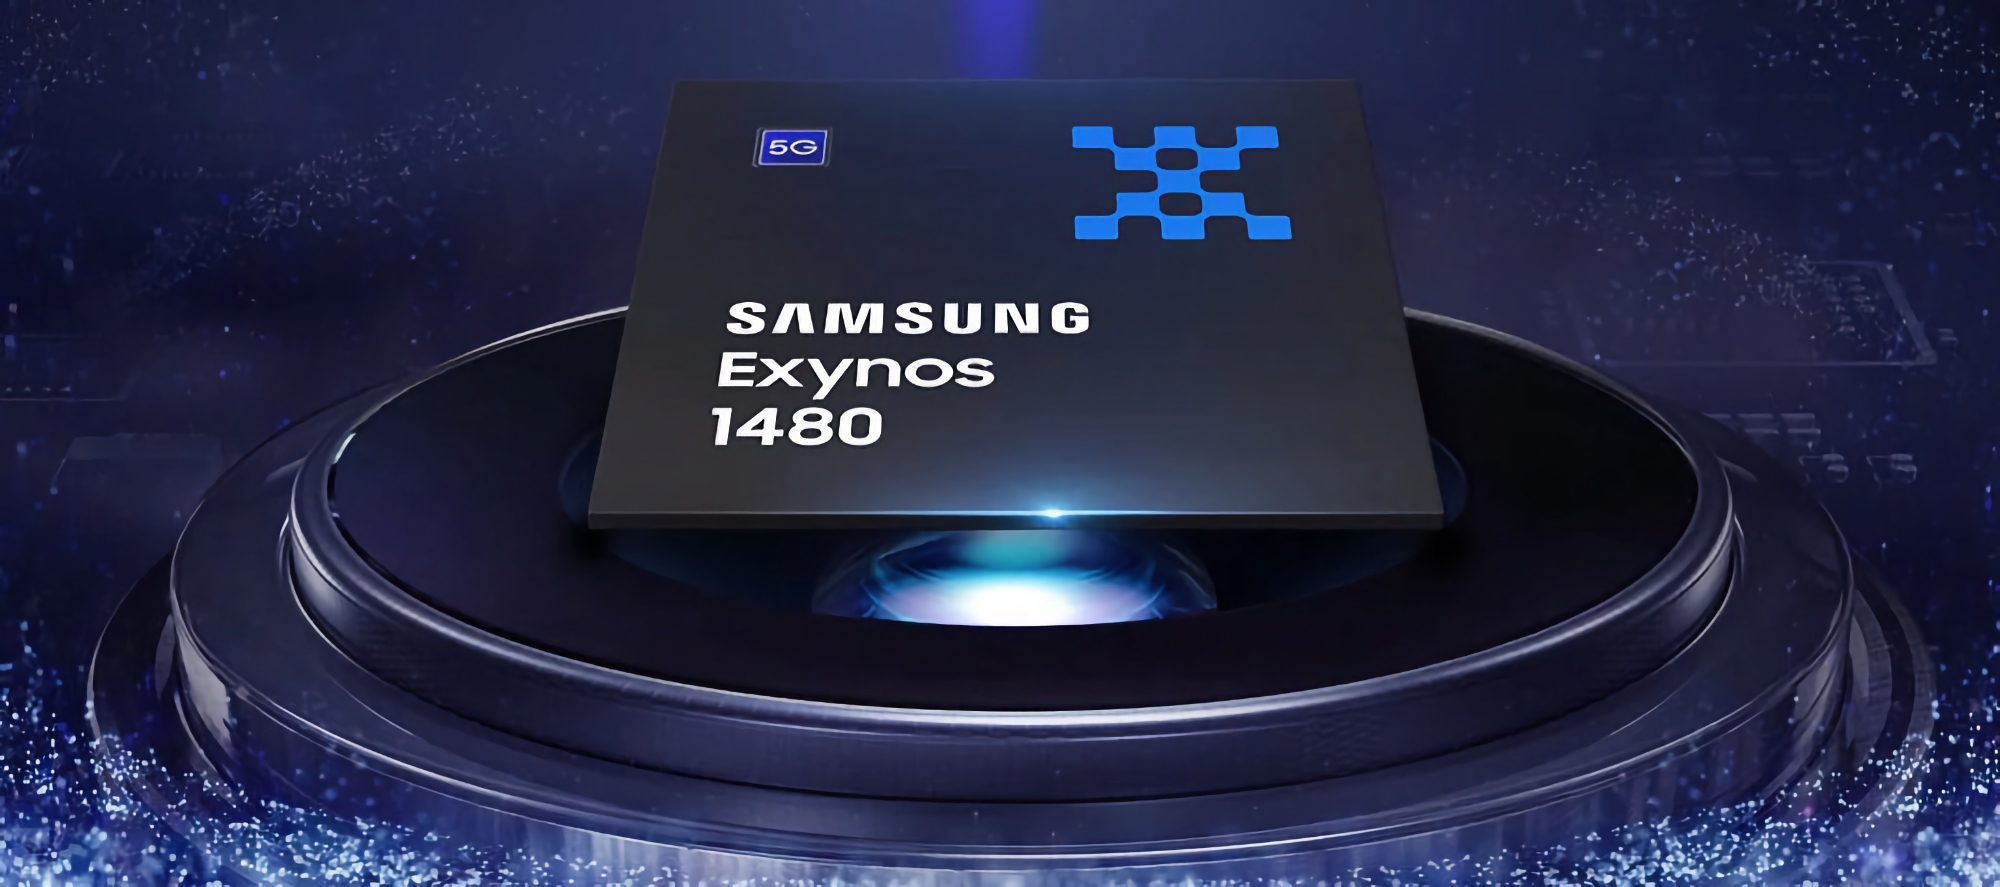 Samsung heeft de specificaties van de Exynos 1480-chip onthuld: acht kernen, 4 nanometer en Xclipse 530 graphics met AMD RDNA 2-architectuur.